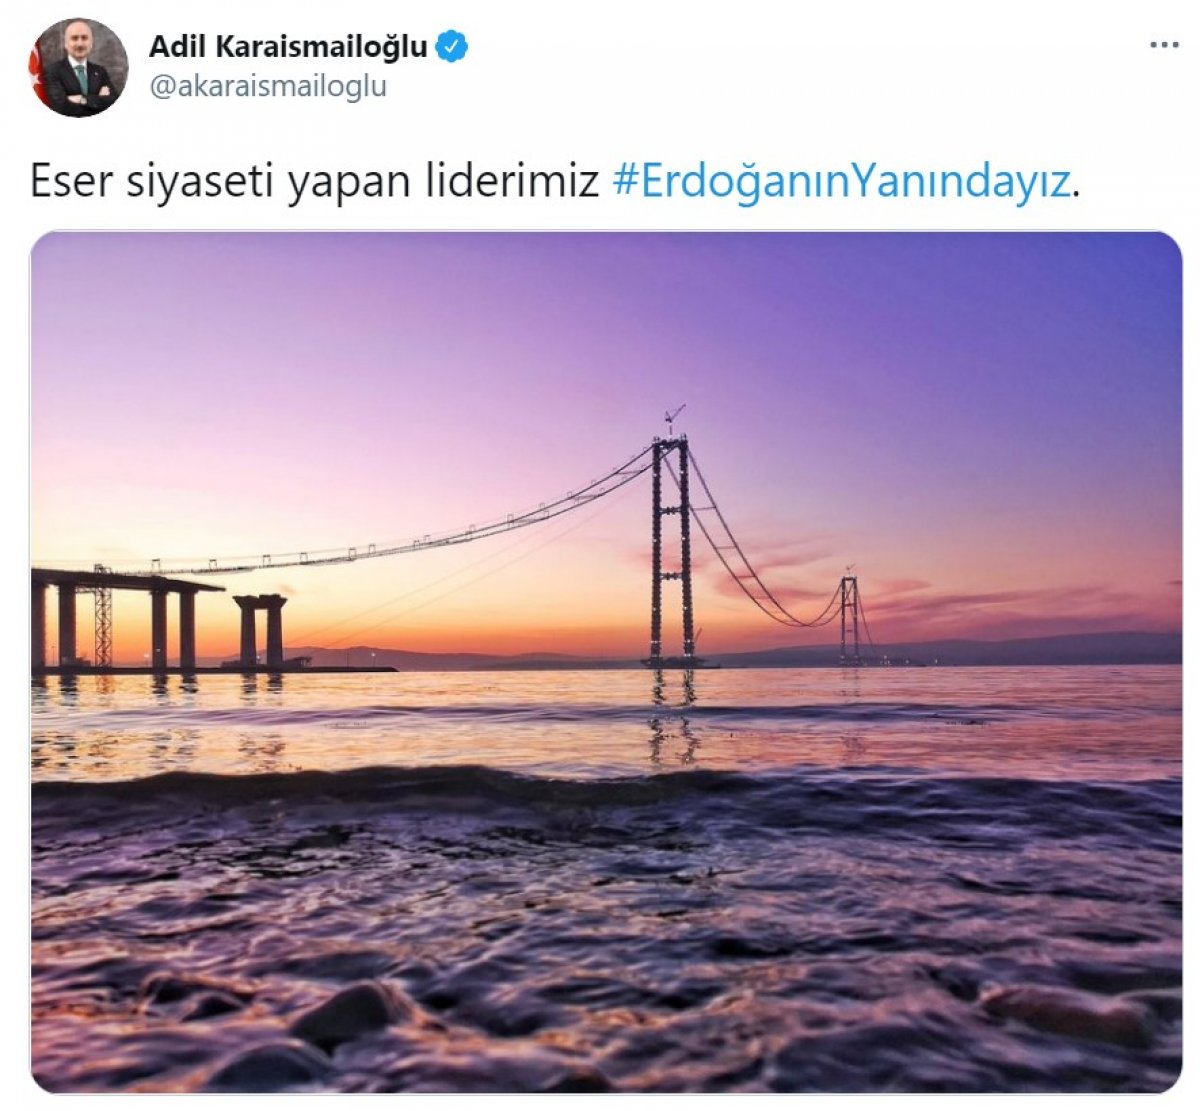 Cumhurbaşkanı Erdoğan a destek tweet leri 2 milyonu aştı #16